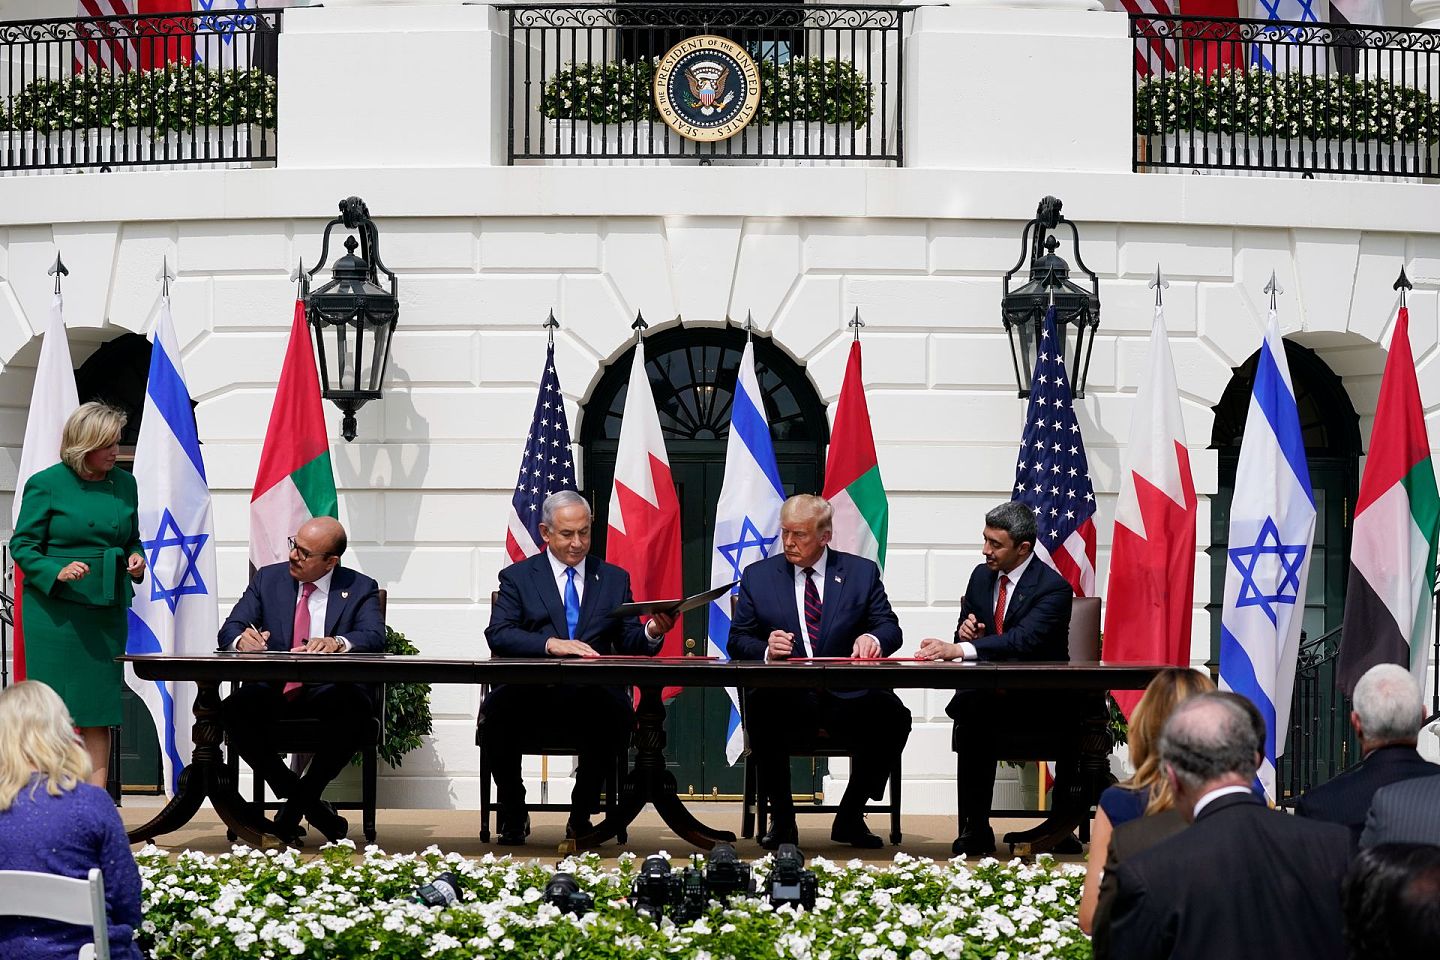 美国总统特朗普（Donald Trump）于2020年9月15日在白宫主持以色列与阿联酋和巴林关系正常化协议——即《亚伯拉罕协议》的签署仪式，此举拉开了以色列与阿拉伯国家关系正常化进程的序幕。但这一进程在特朗普离任之后能否持续推行下去，前景尚不明朗。（AP）